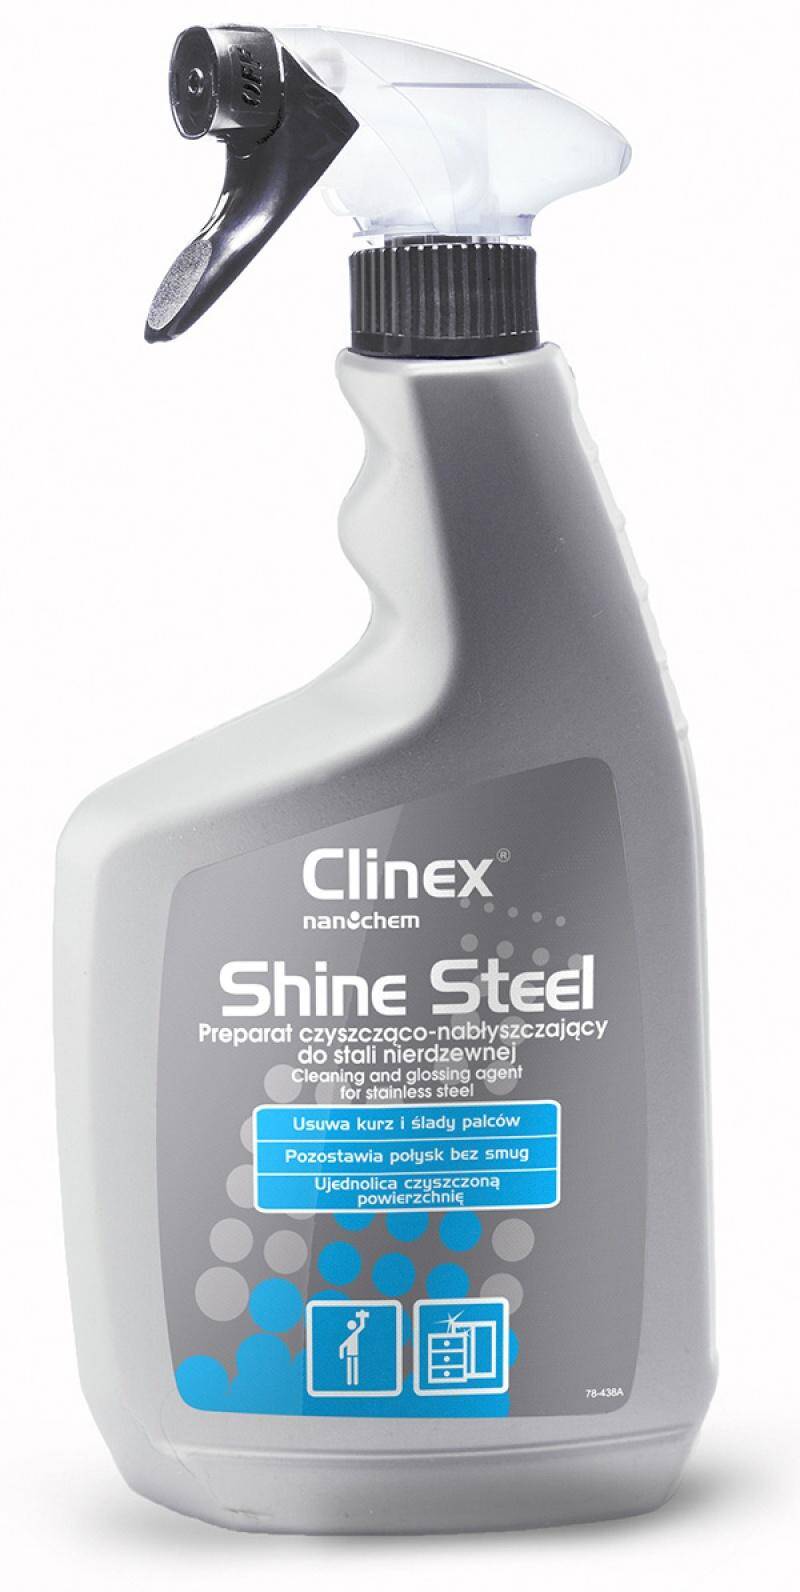 CLINEX Shine Steel do stali nierdzewnej